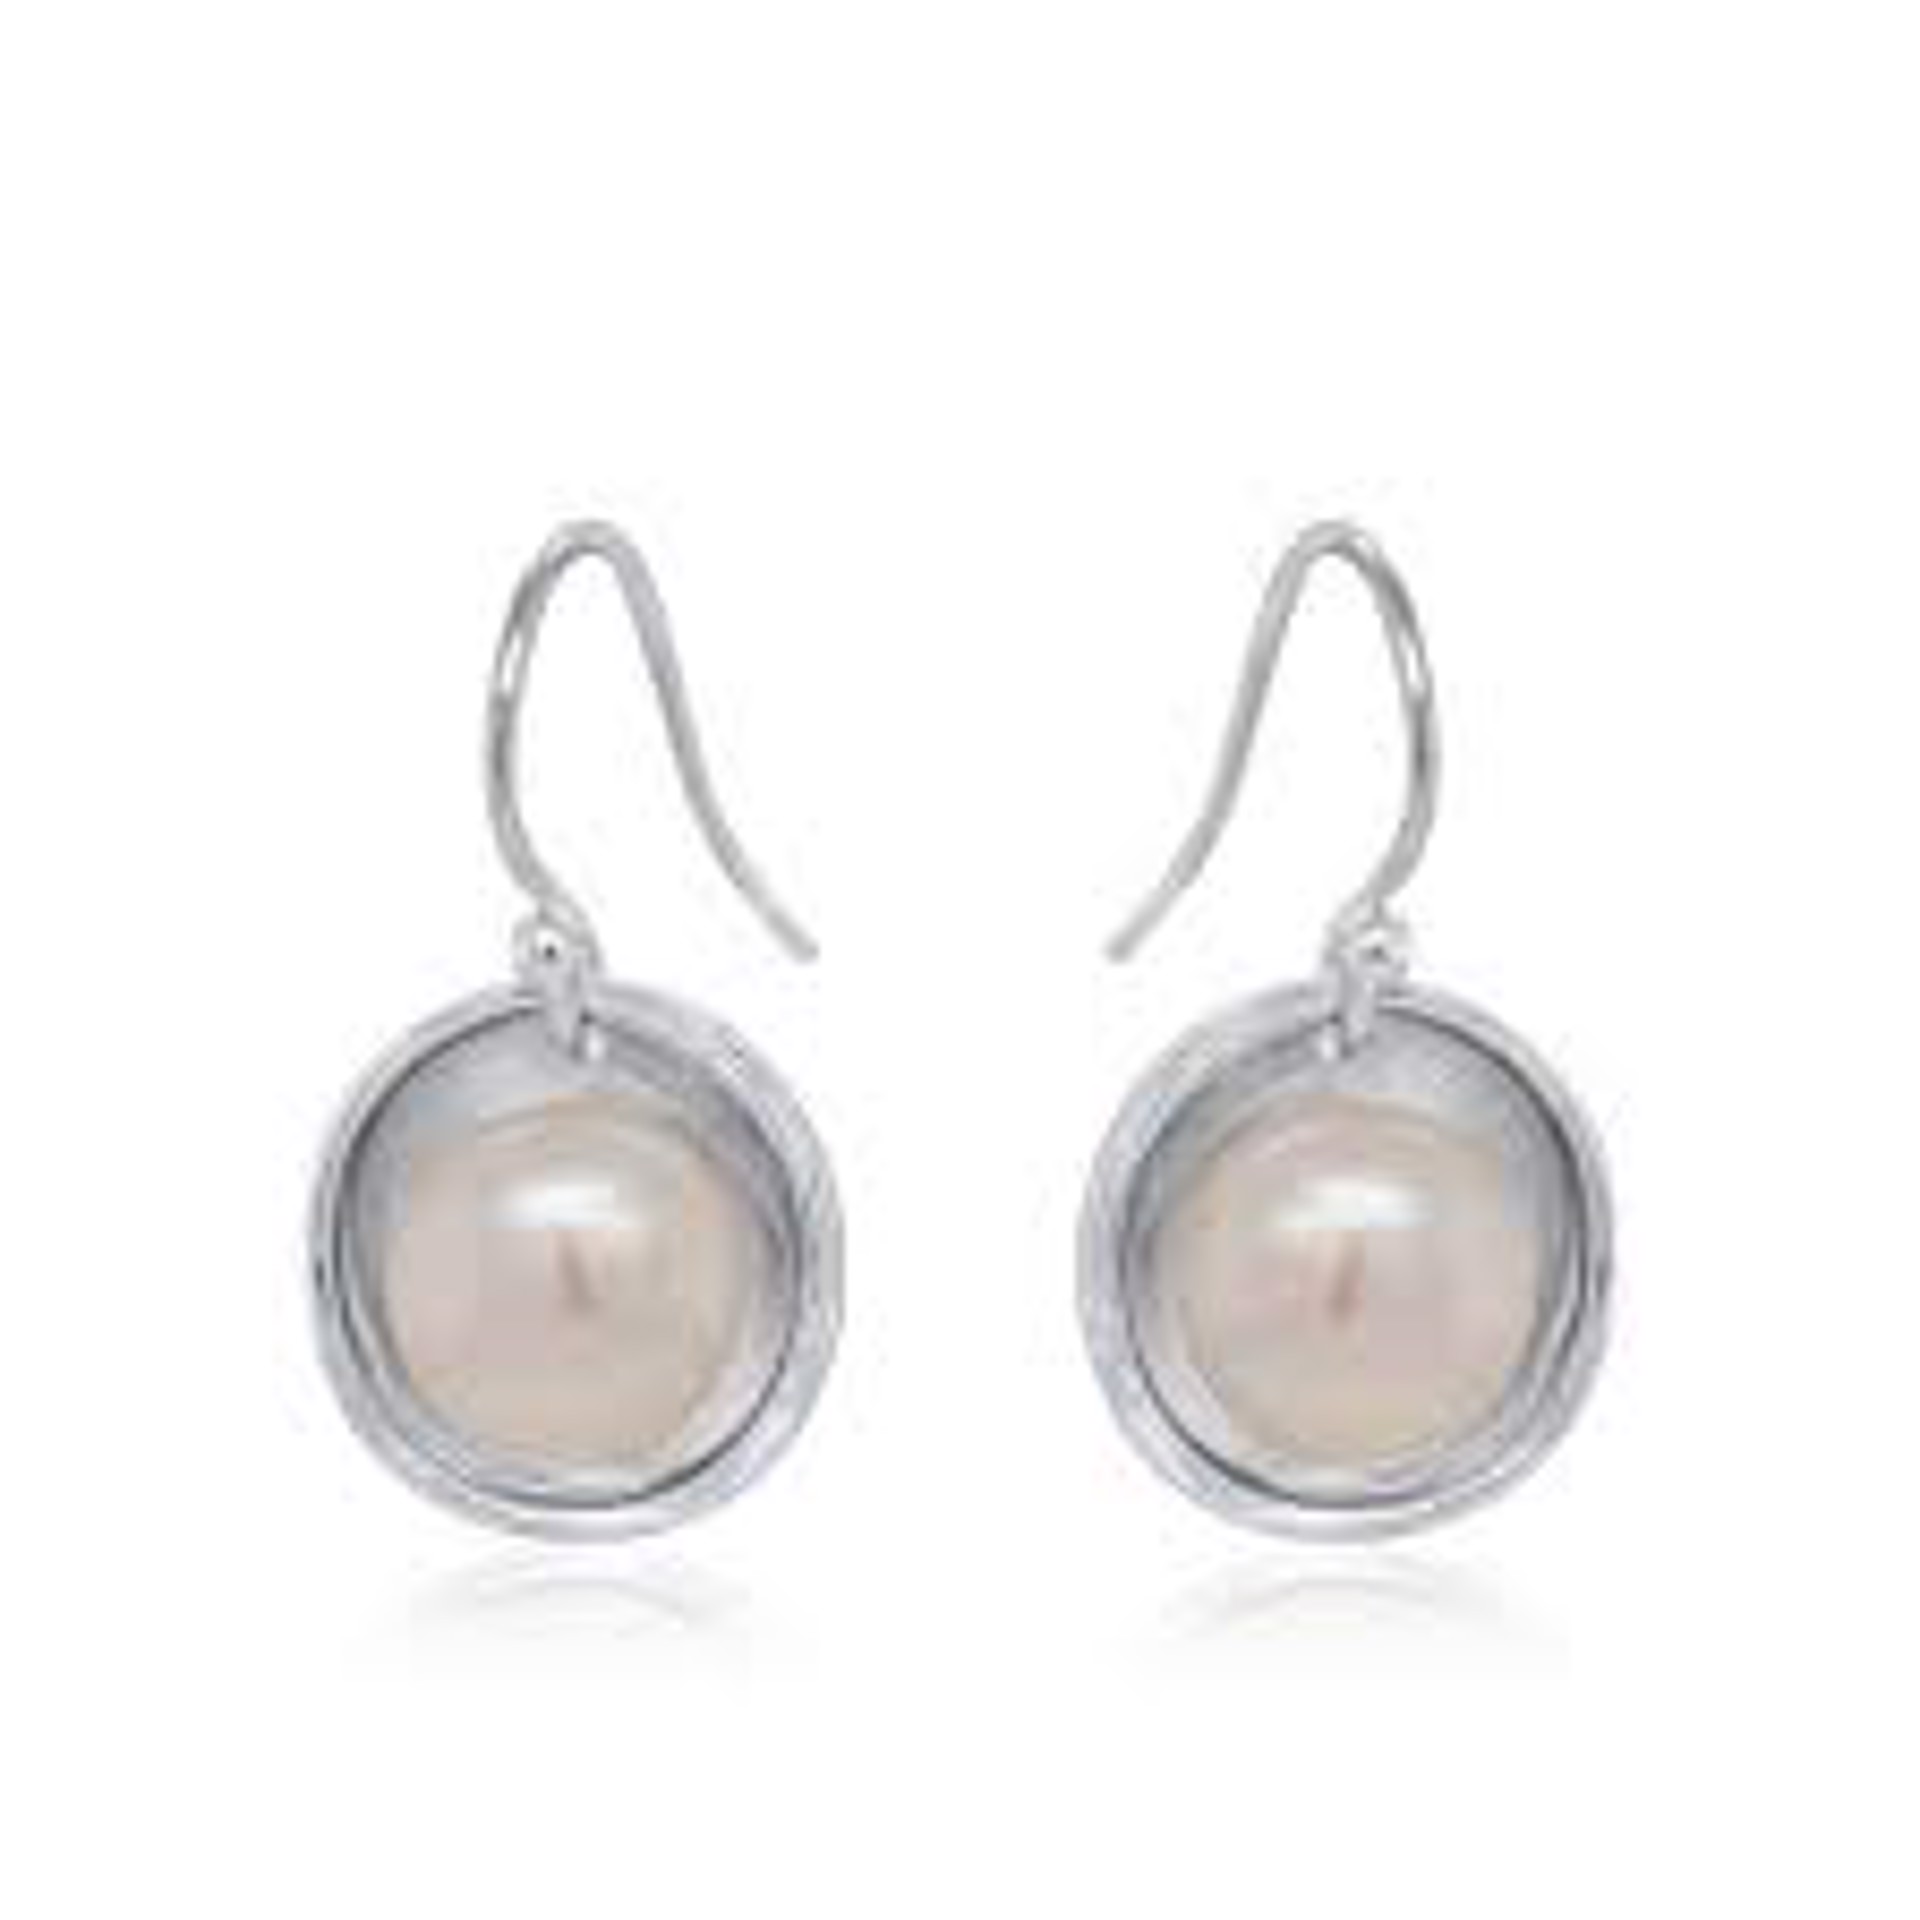 Single Drop Pearl Earrings by Kristen Baird